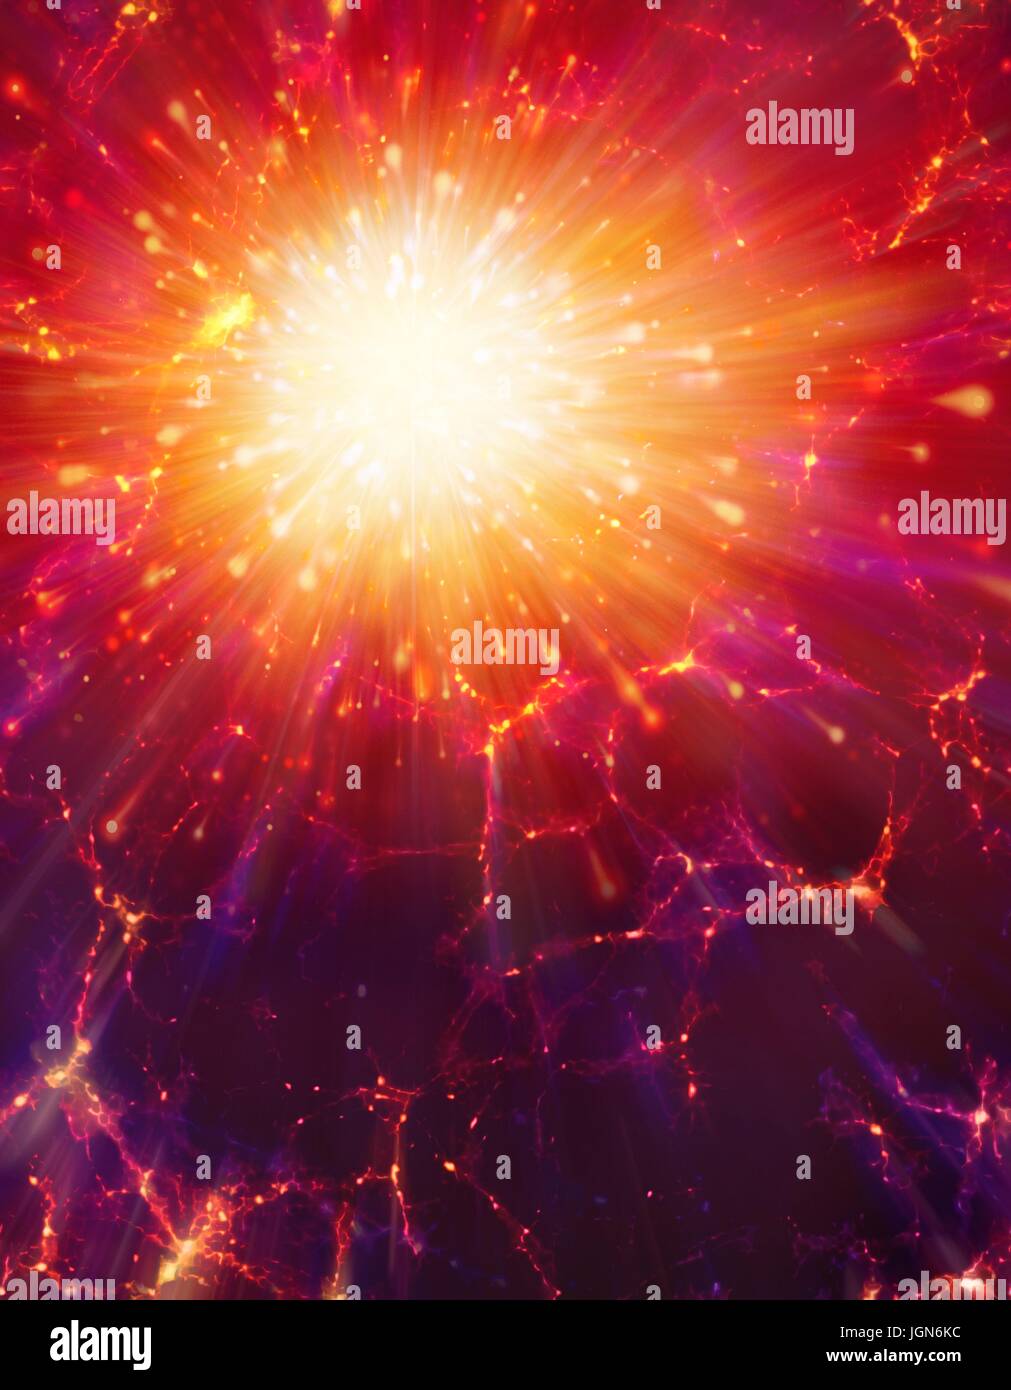 Big Bang, immagine concettuale. Illustrazione del computer che rappresenta l'origine dell'universo. Il termine Big Bang descrive la prima espansione di tutta la materia nell'universo da un infinitamente stato compatto 13,7 miliardi di anni fa. Le condizioni iniziali non sono noti, ma meno di un secondo dopo l'inizio, le temperature erano di trilioni di gradi Celsius e l'universo primordiale era molto più piccola di un atomo. Essa è stata l'espansione ed il raffreddamento fin. La materia formata e raggruppata in galassie che sono osservati da un movimento di allontanamento reciproco. Foto Stock